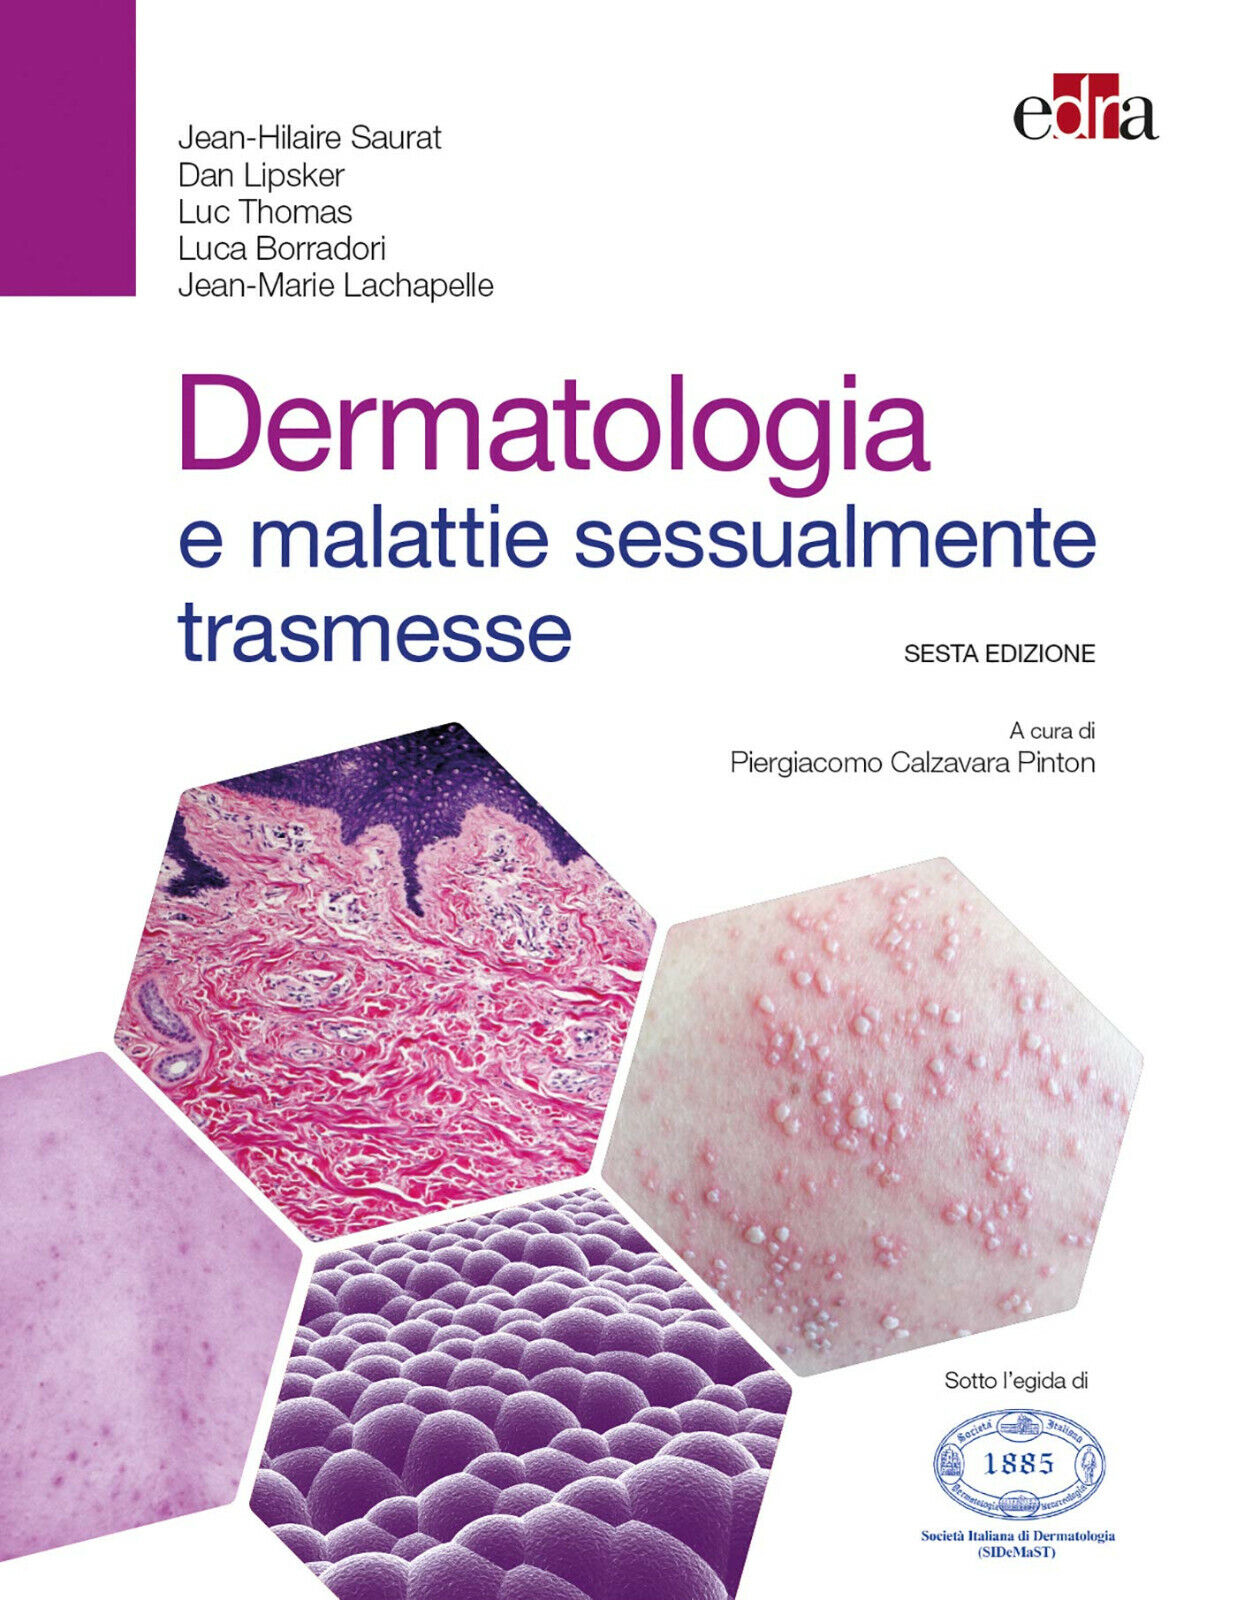 Dermatologia e malattie sessualmente trasmesse - Edra, 2018